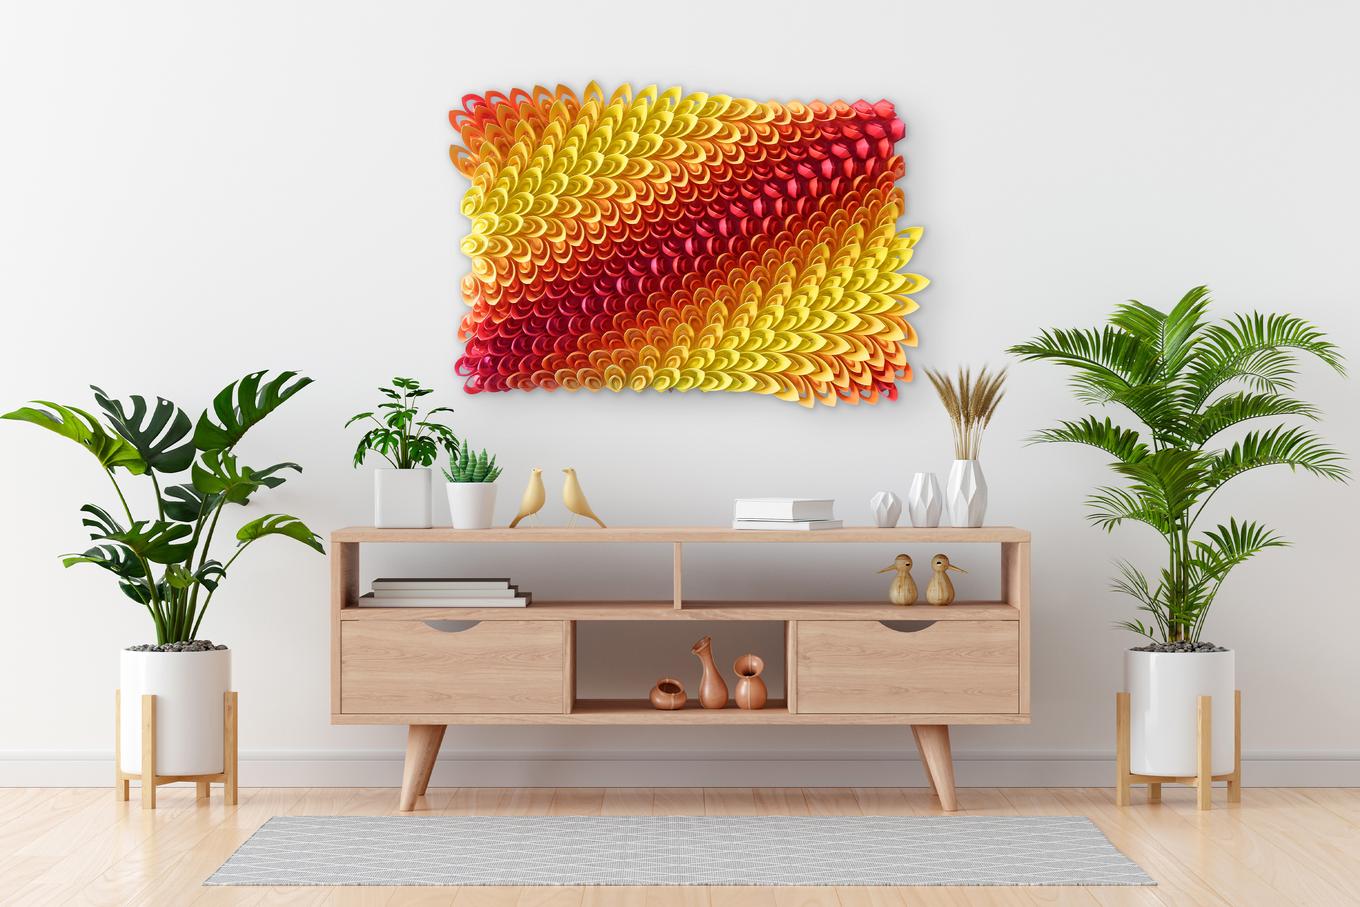 Fire Lotus | Herschel Shapiro | Modern Dimensional 3D Wall Art Mosaic 